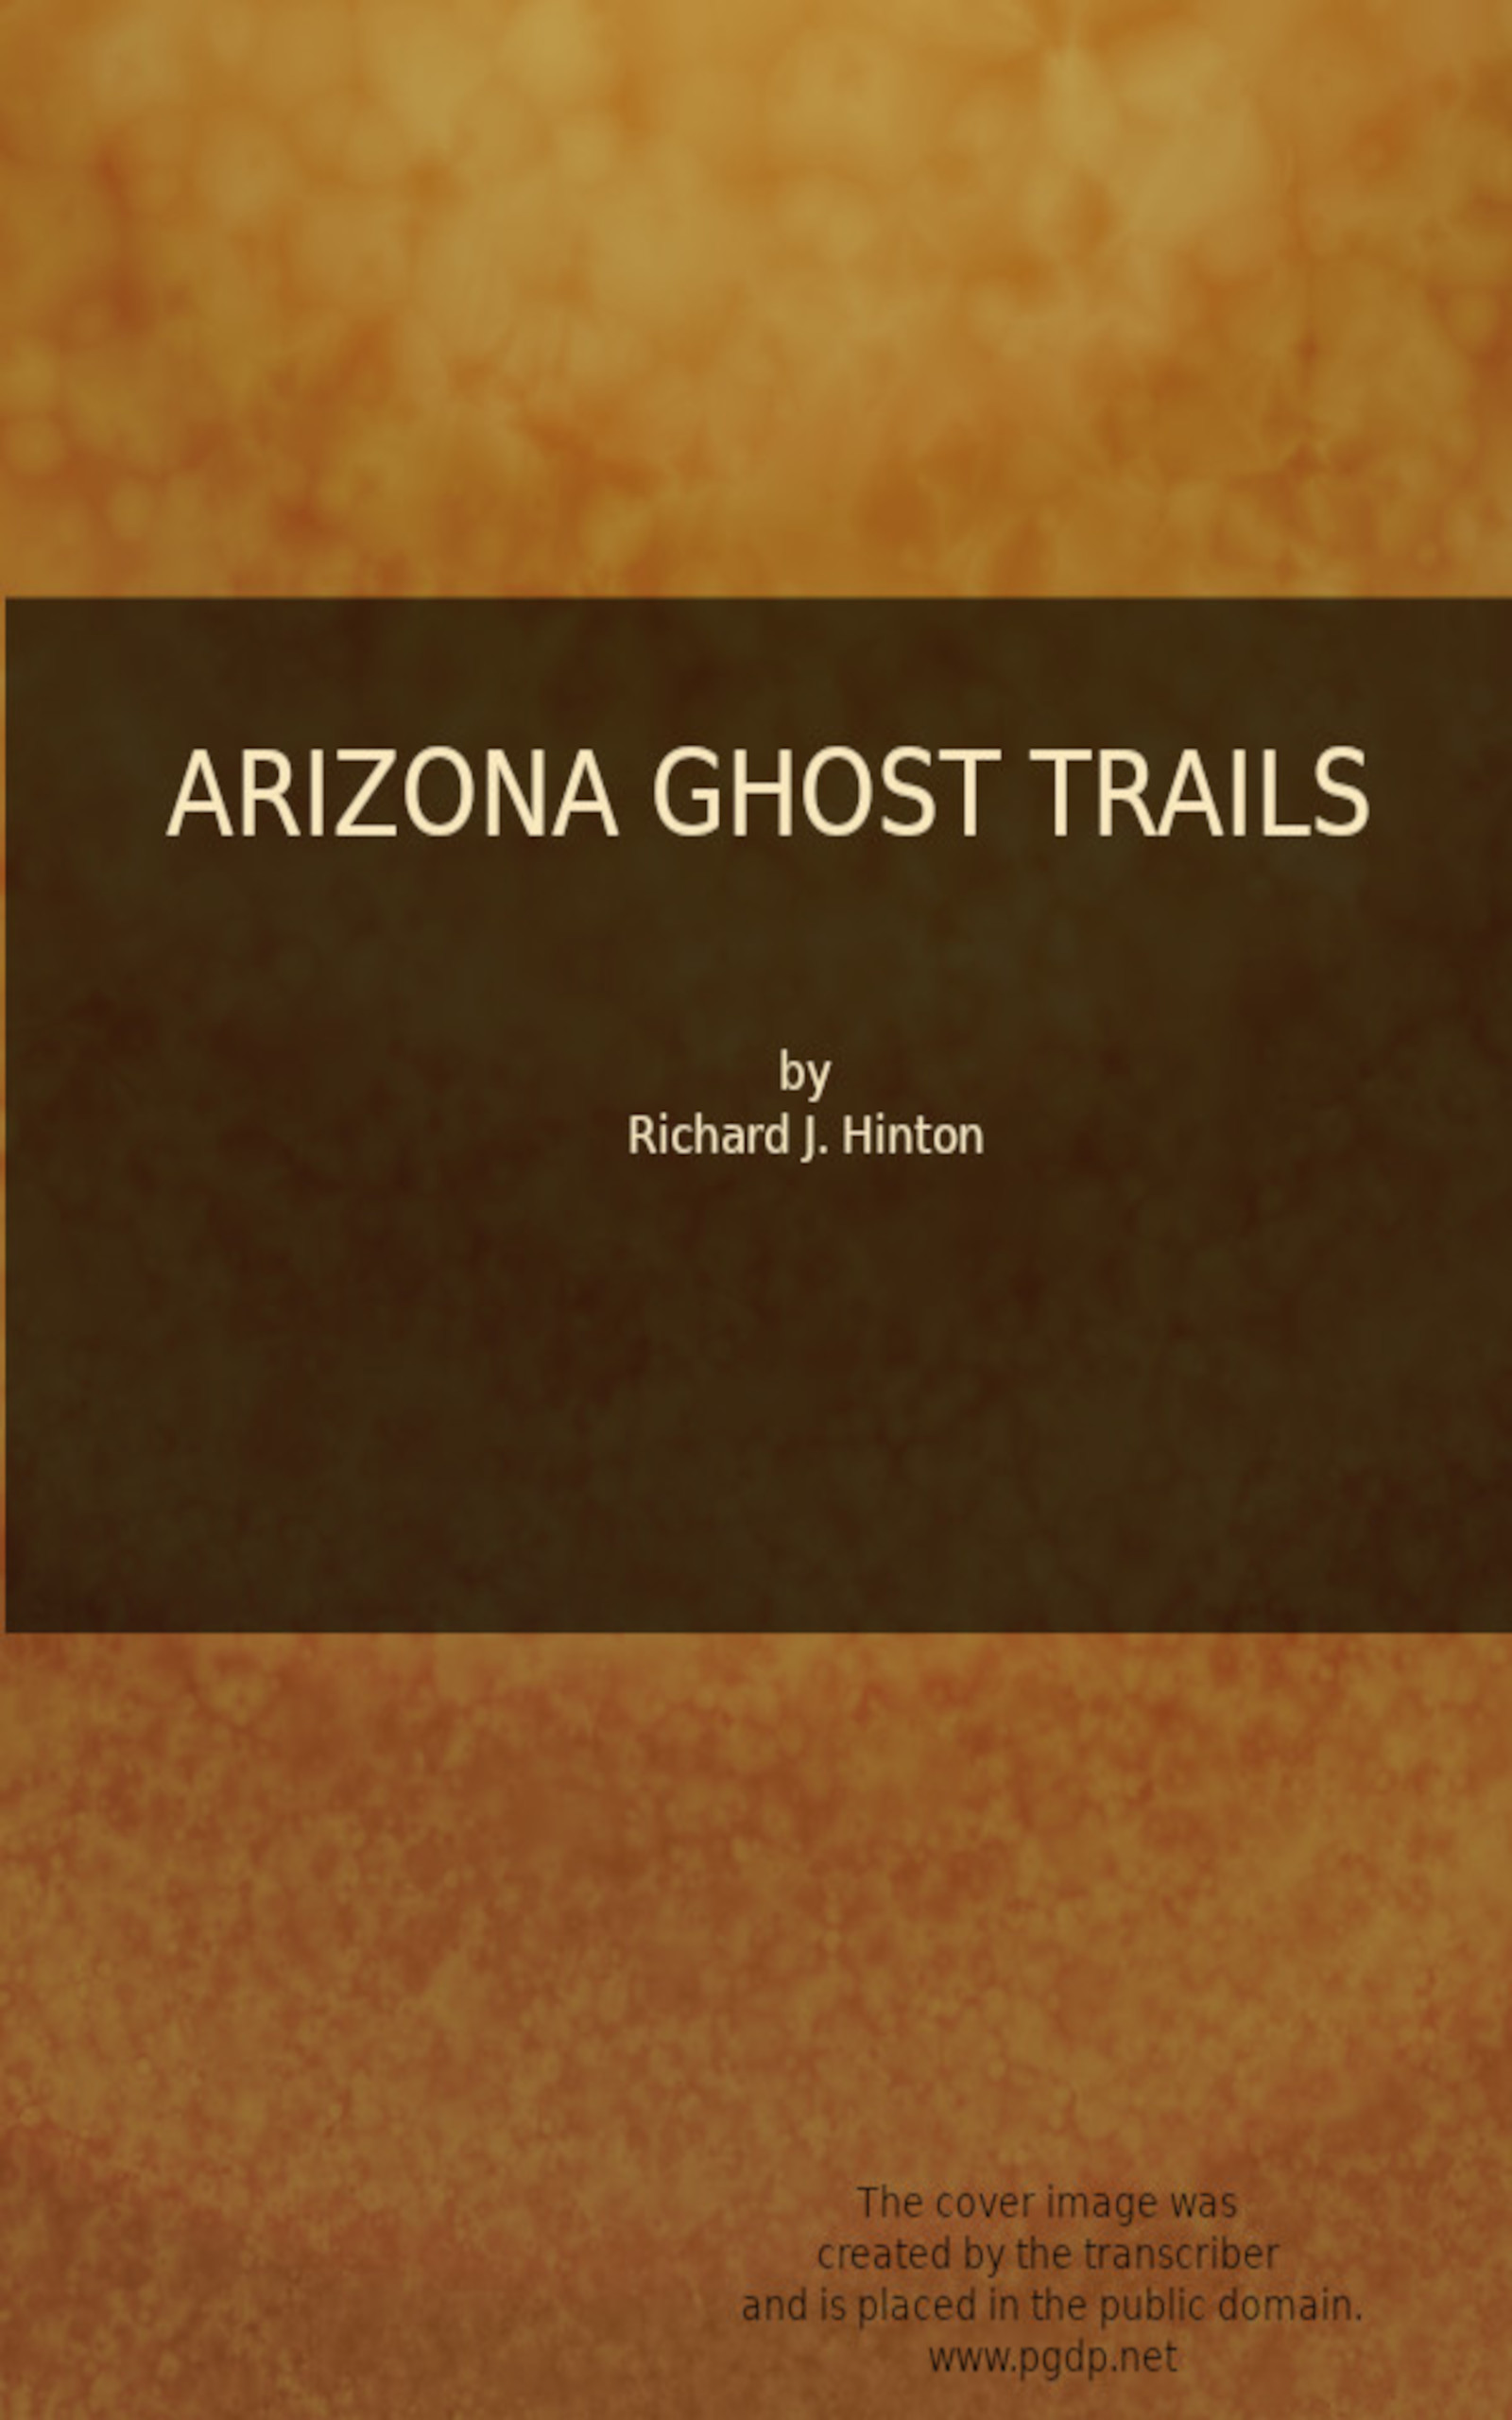 Arizona ghost trails